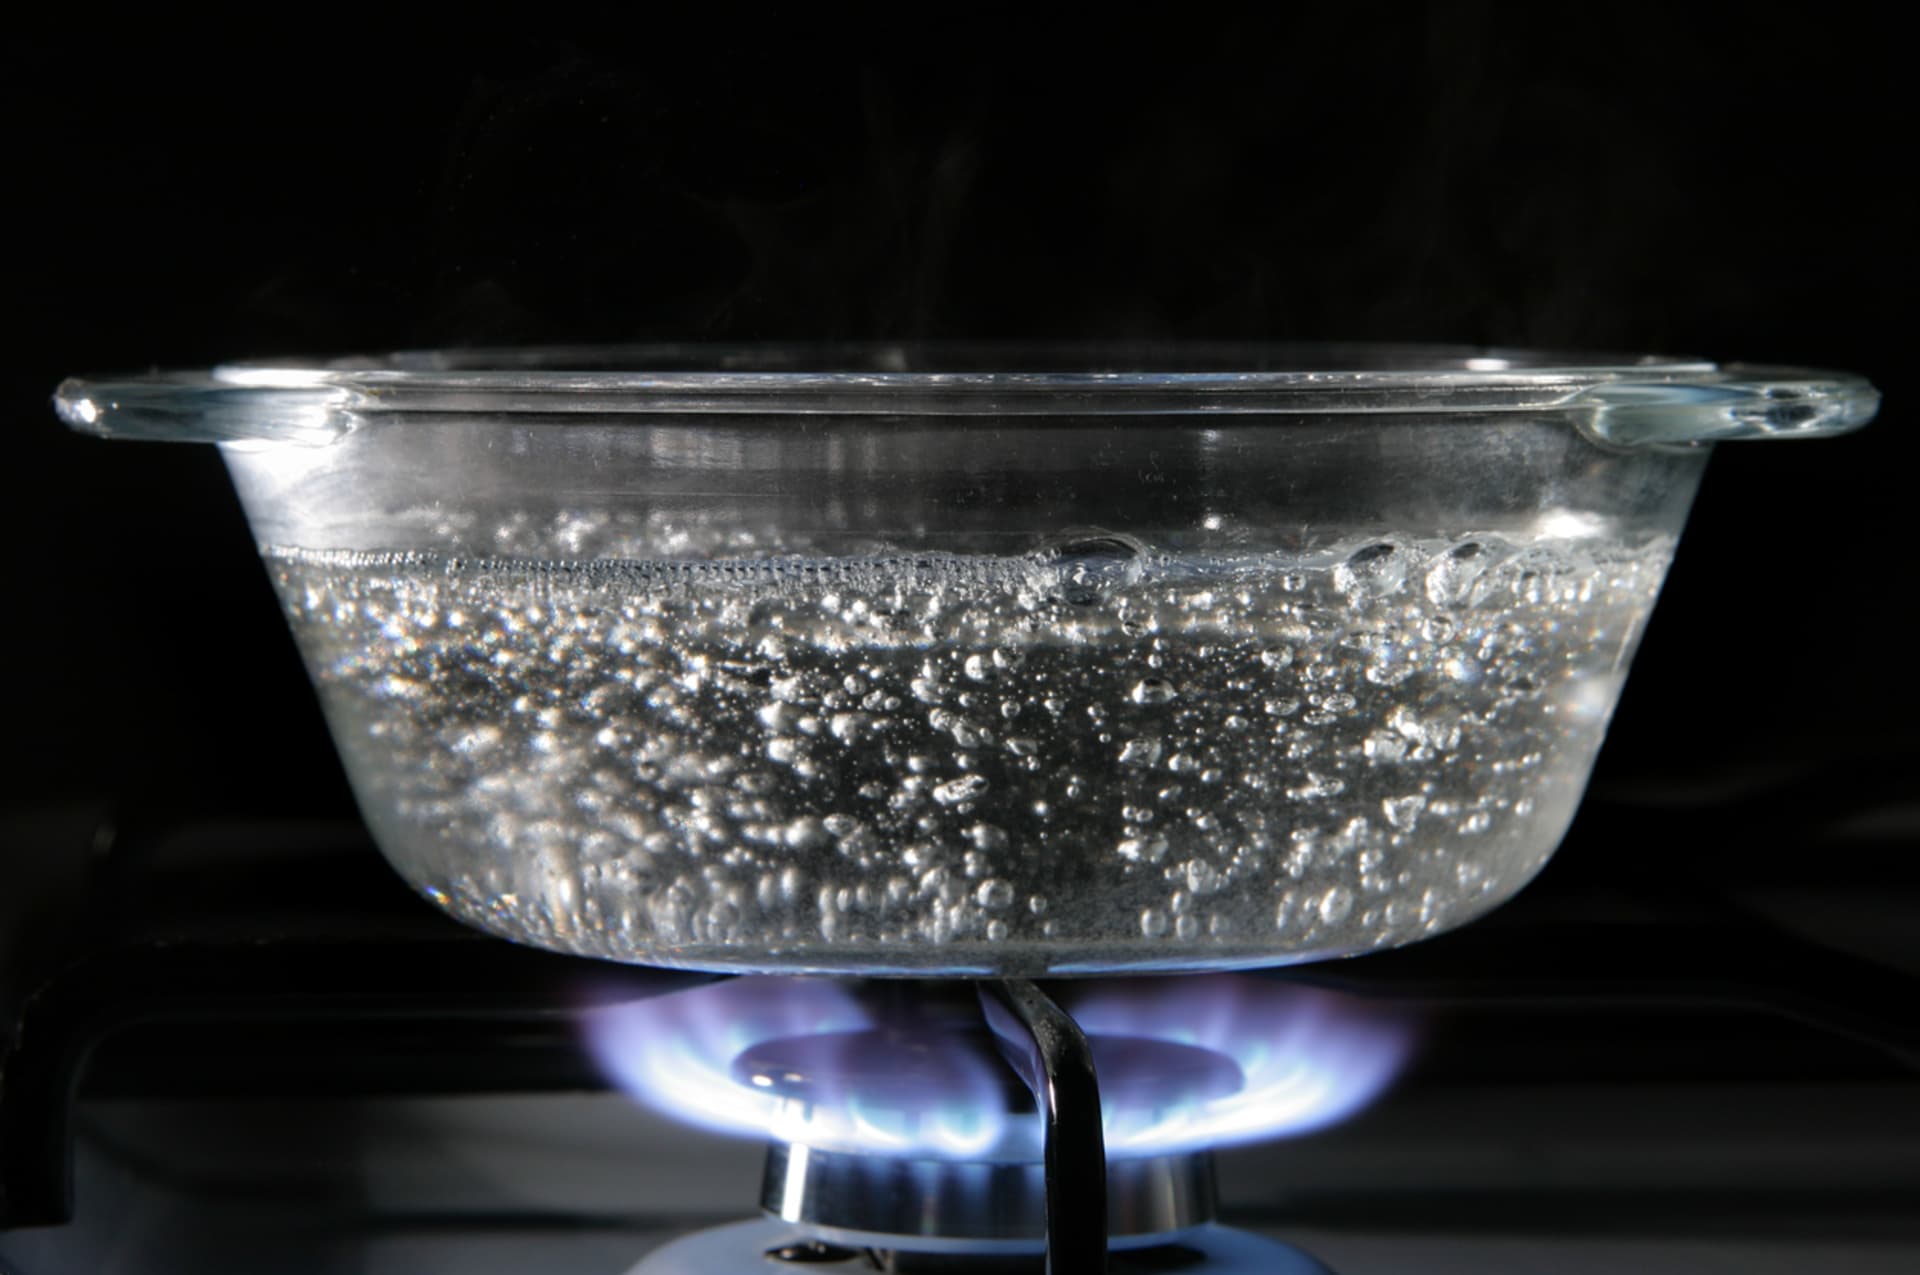 Boil water in a pot